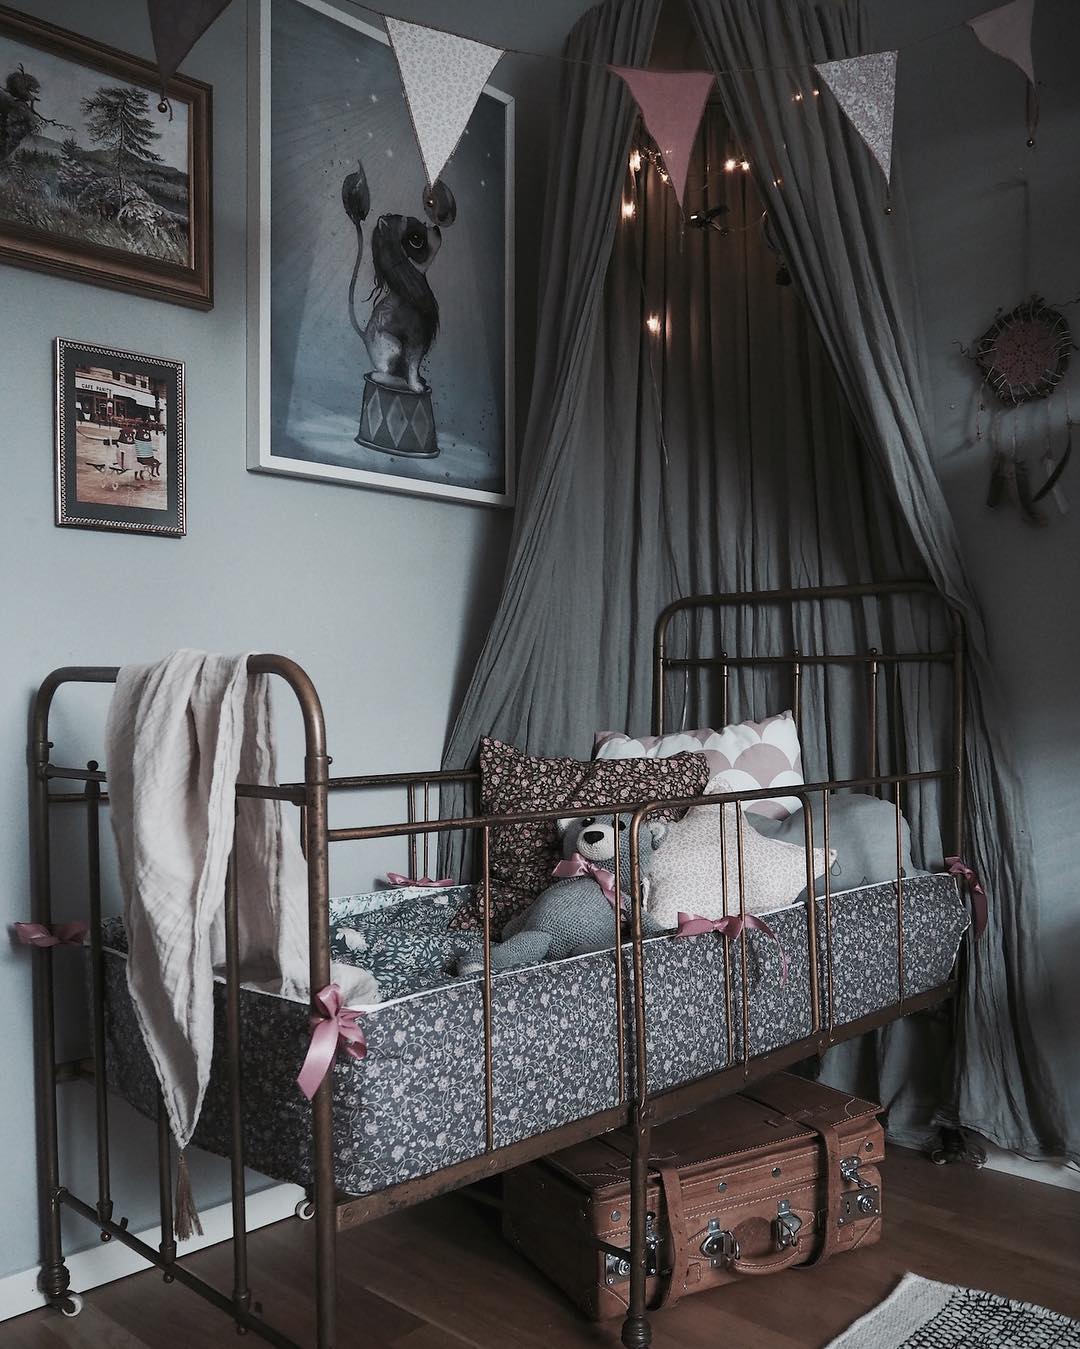 Kącik do spania w pokoju dziecięcym zyskuje na przytulności dzięki zawieszonemu nad łóżeczkiem baldachimowi. Girlanda z...